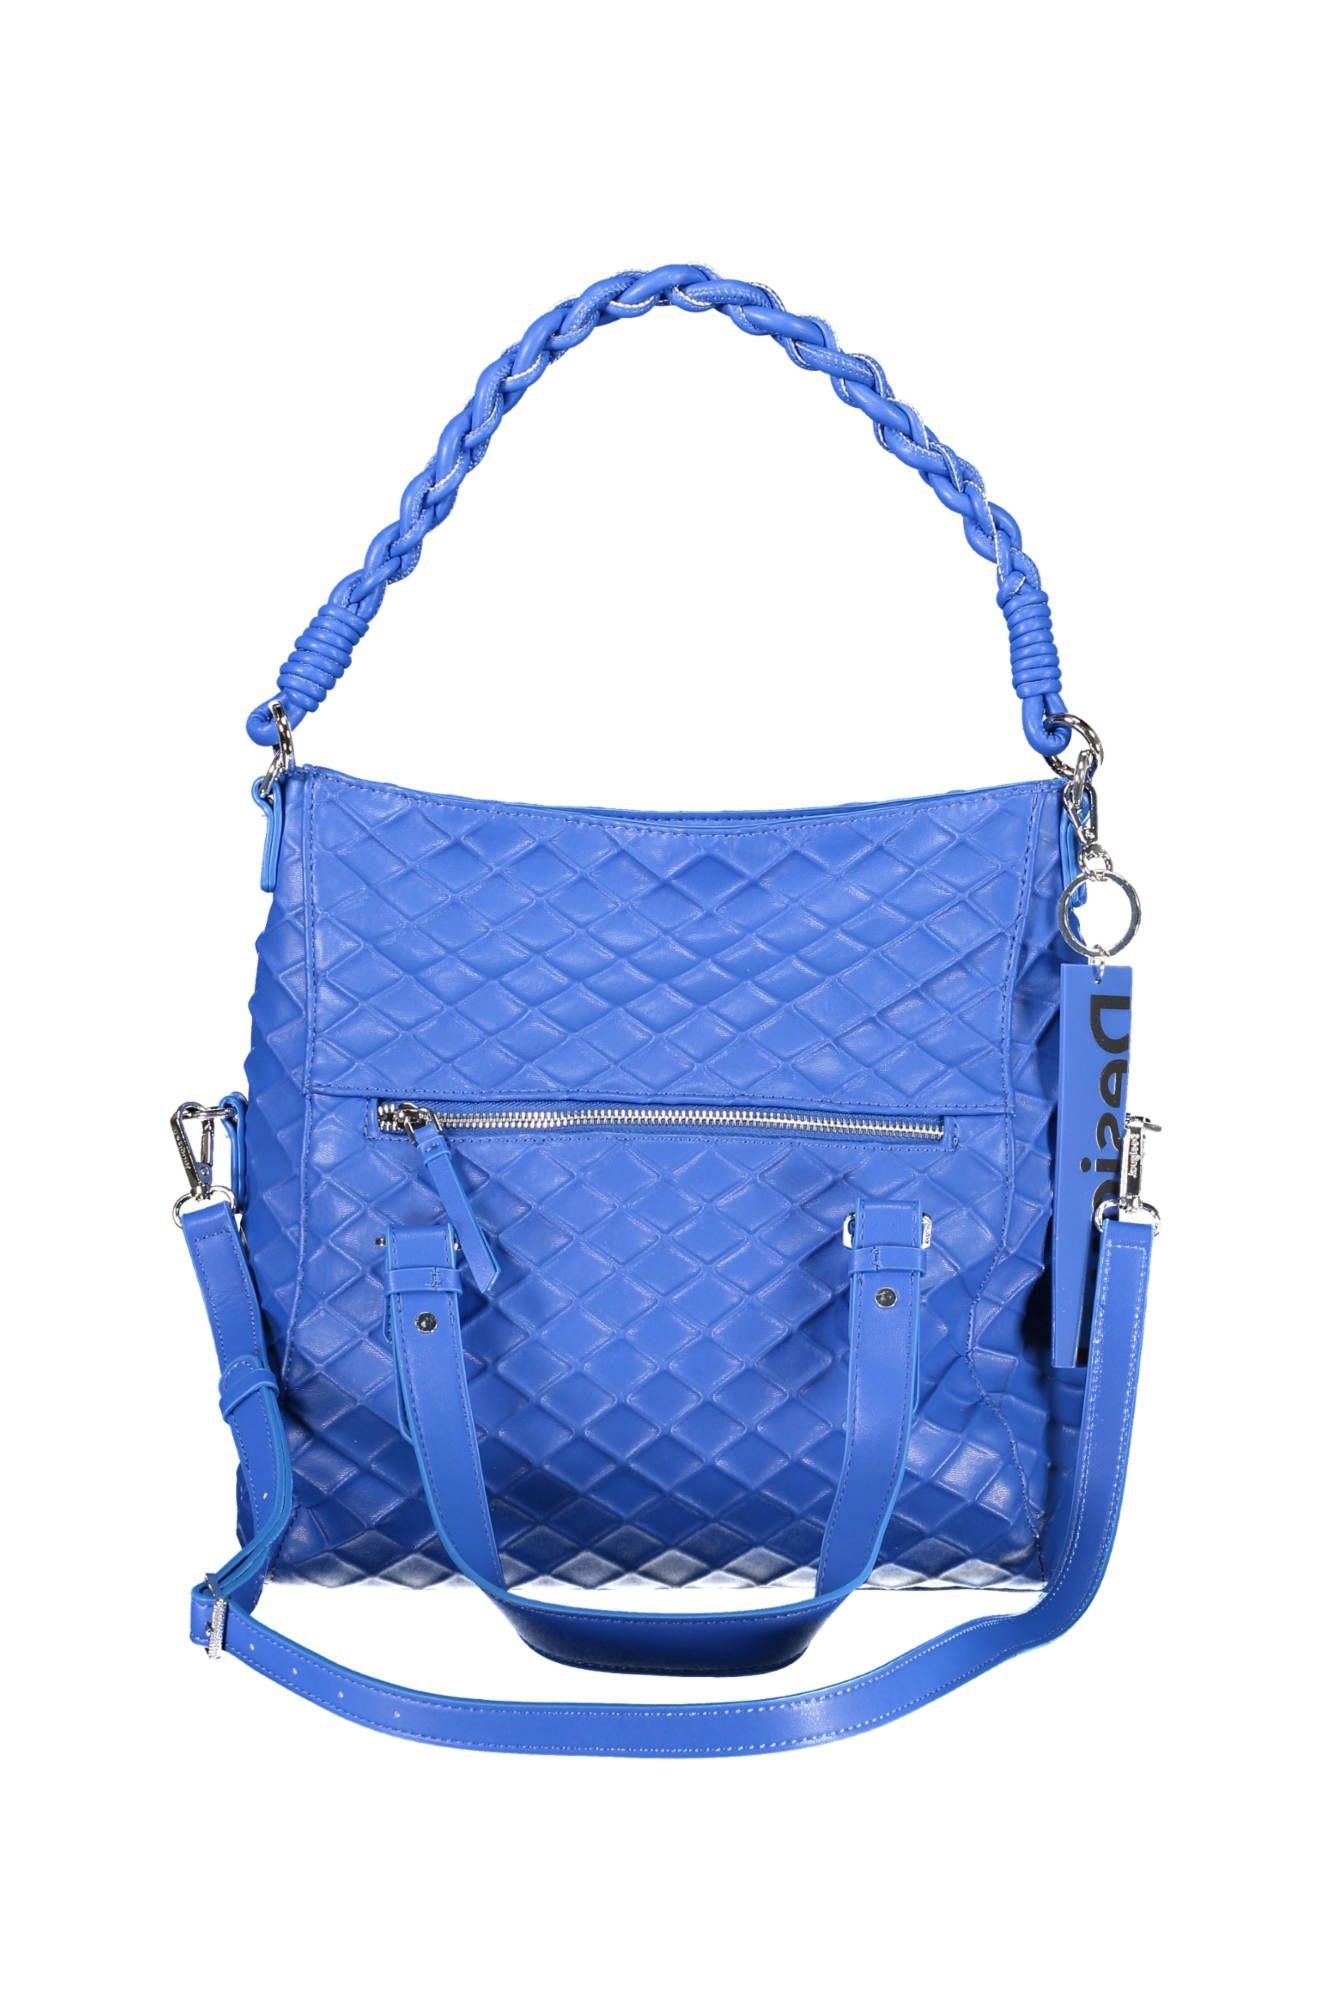 Desigual Blue Polyurethane Handbag - Walbiz.com